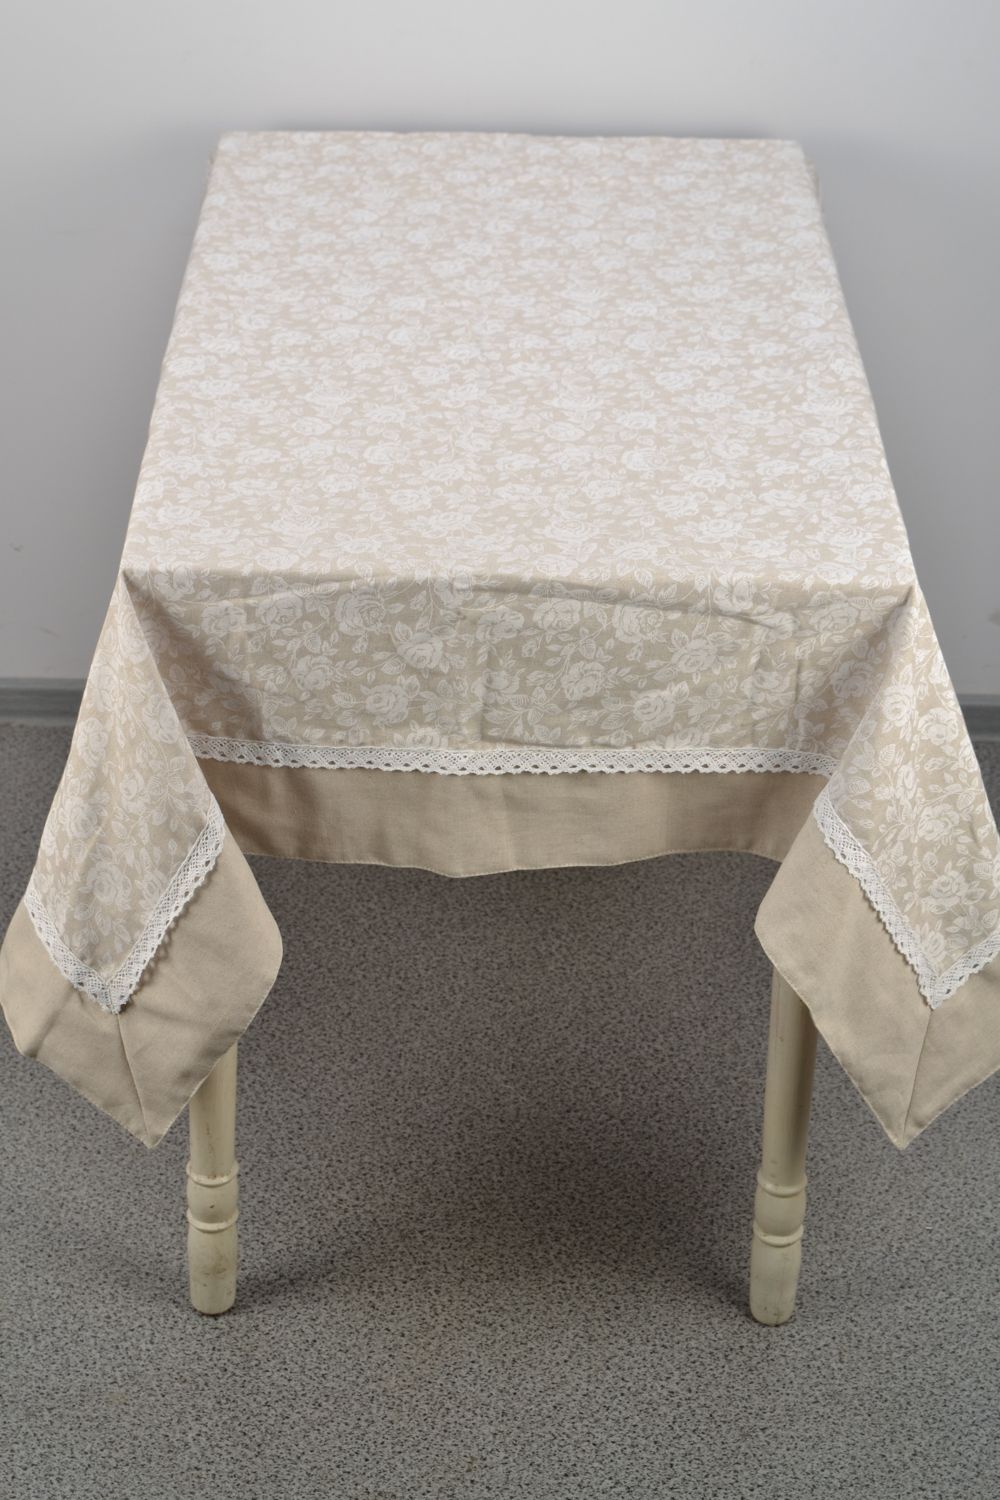 Скатерть на прямоугольный стол из хлопка и полиамида нежная белая фото 2